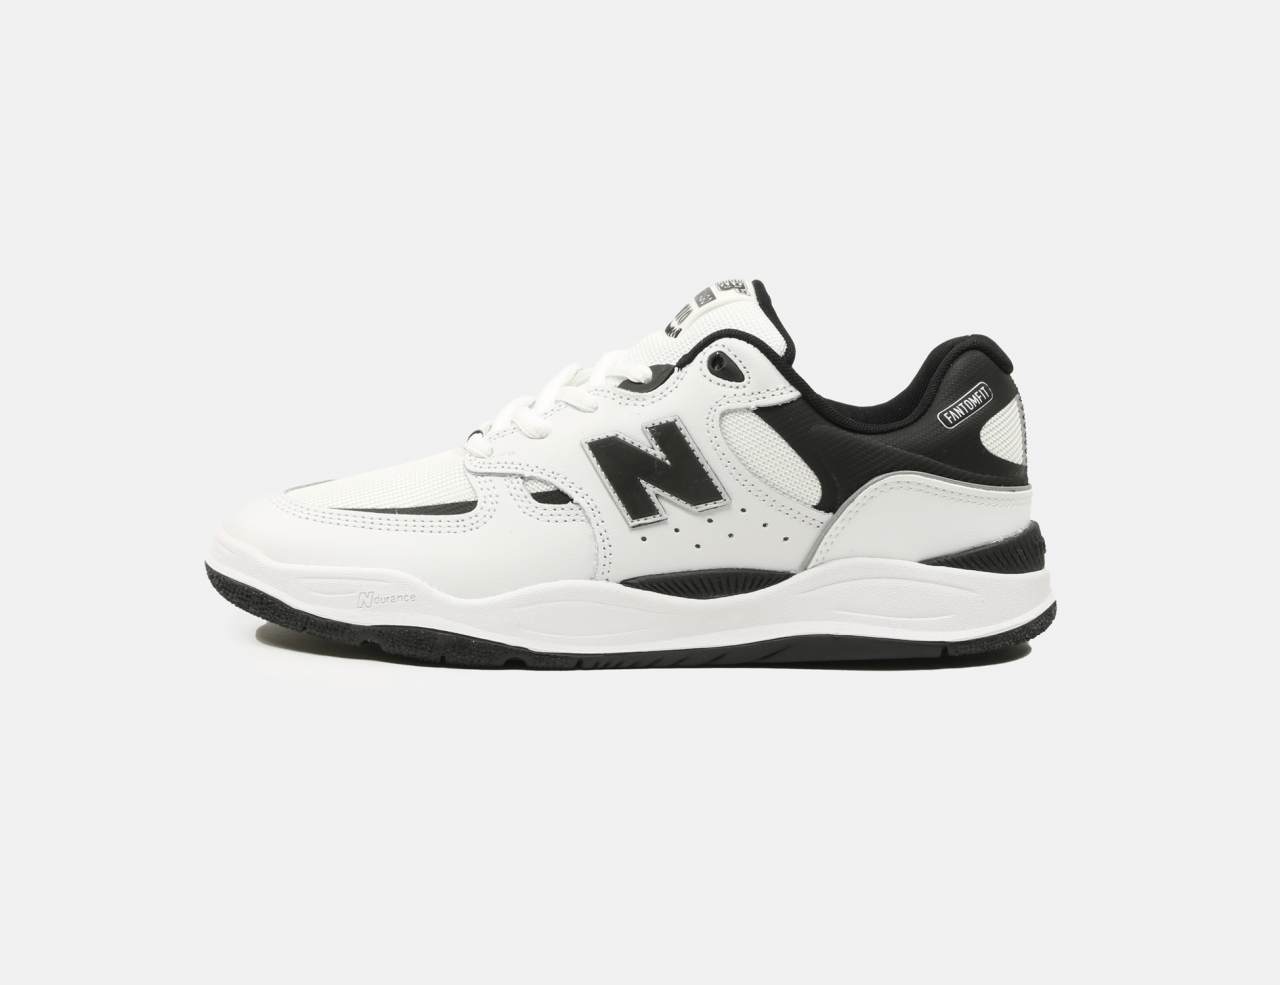 New Balance Numeric Tiago Lemos 1010 Sneaker - White / Black